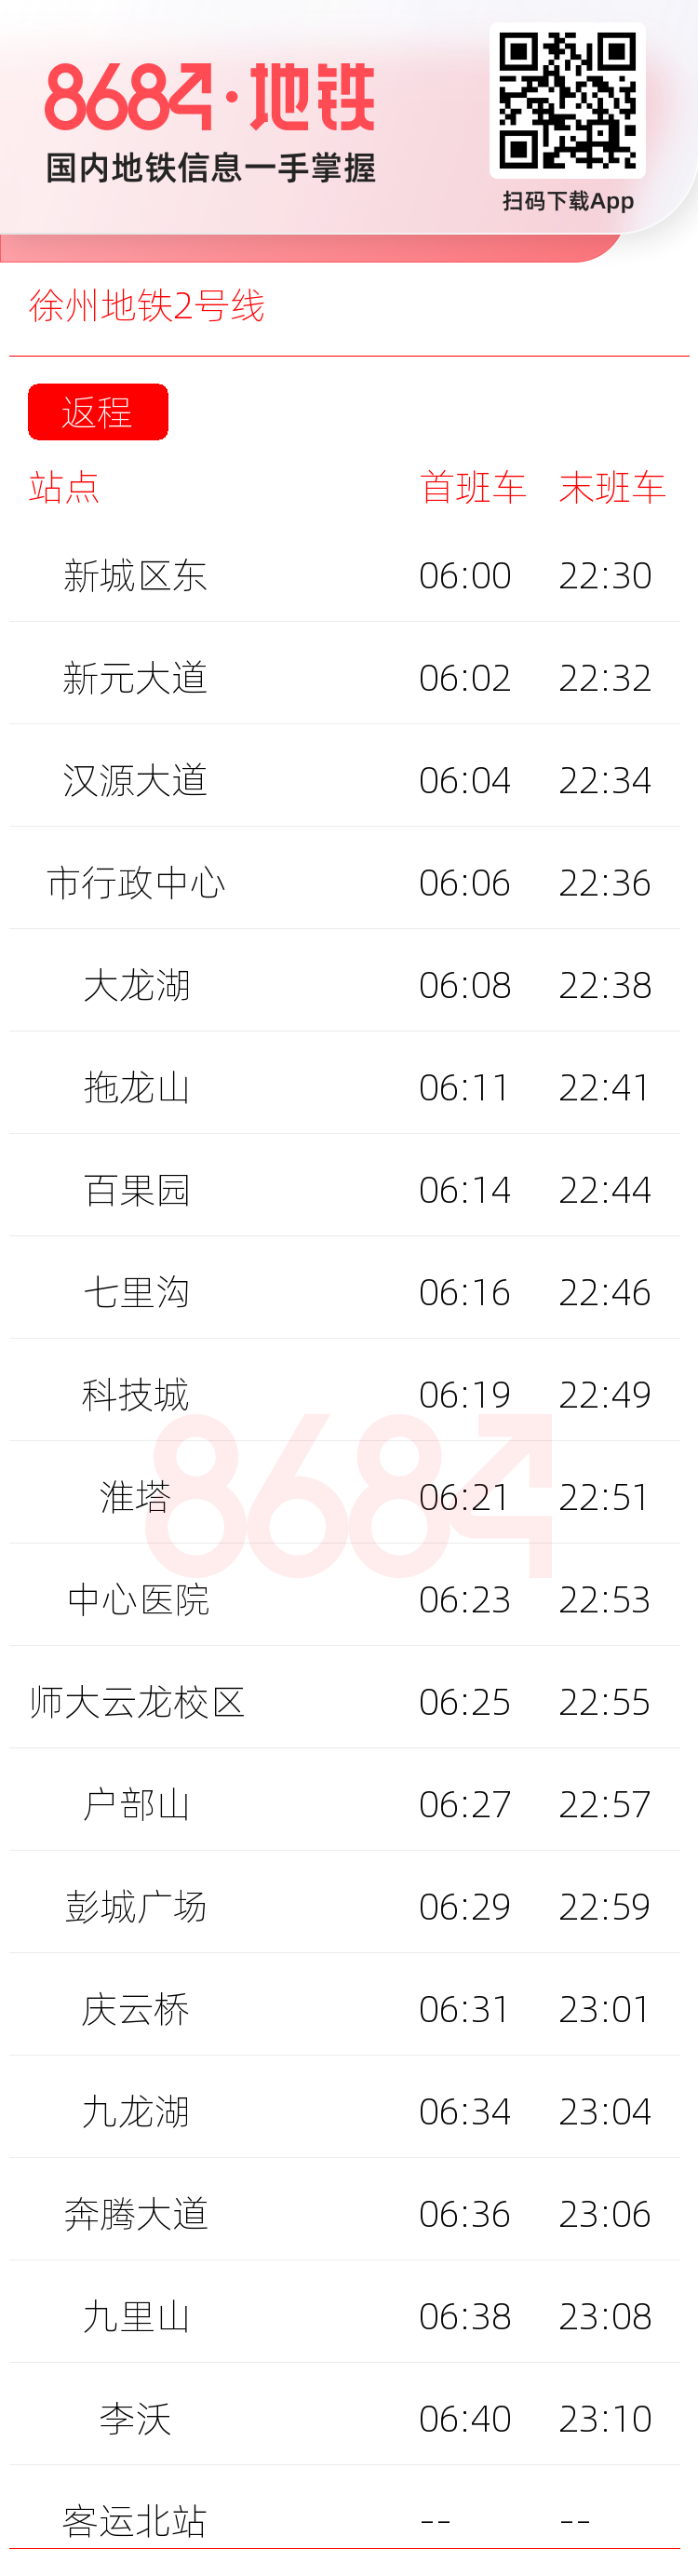 徐州地铁2号线运营时间表